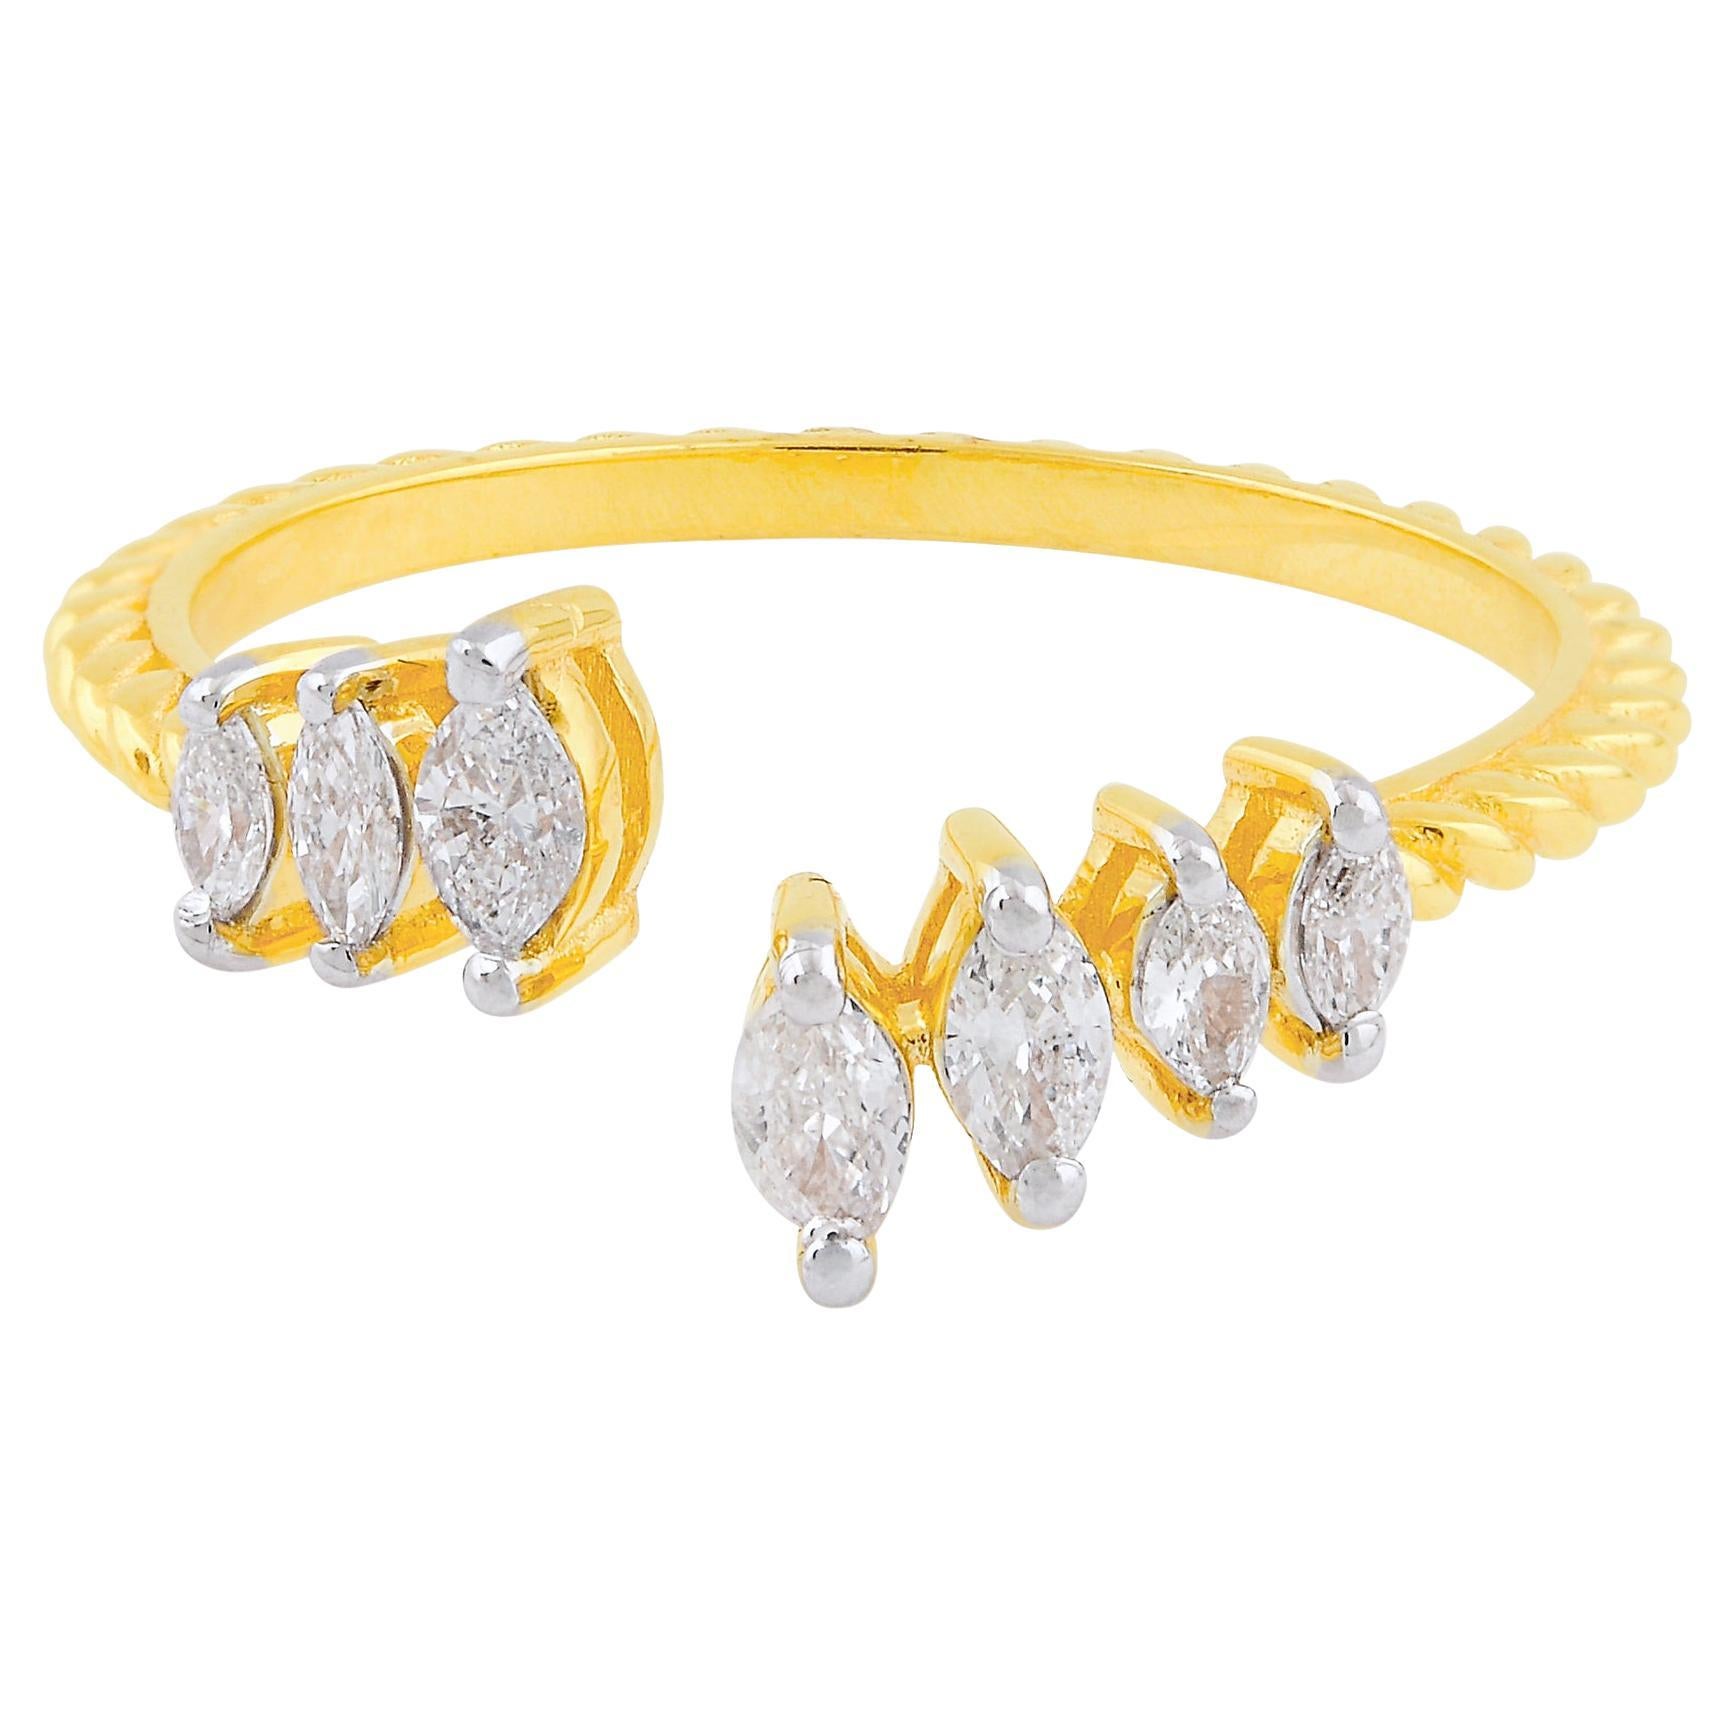 Bague manchette en or jaune 14 carats avec diamants marquises naturels de 0,30 carat